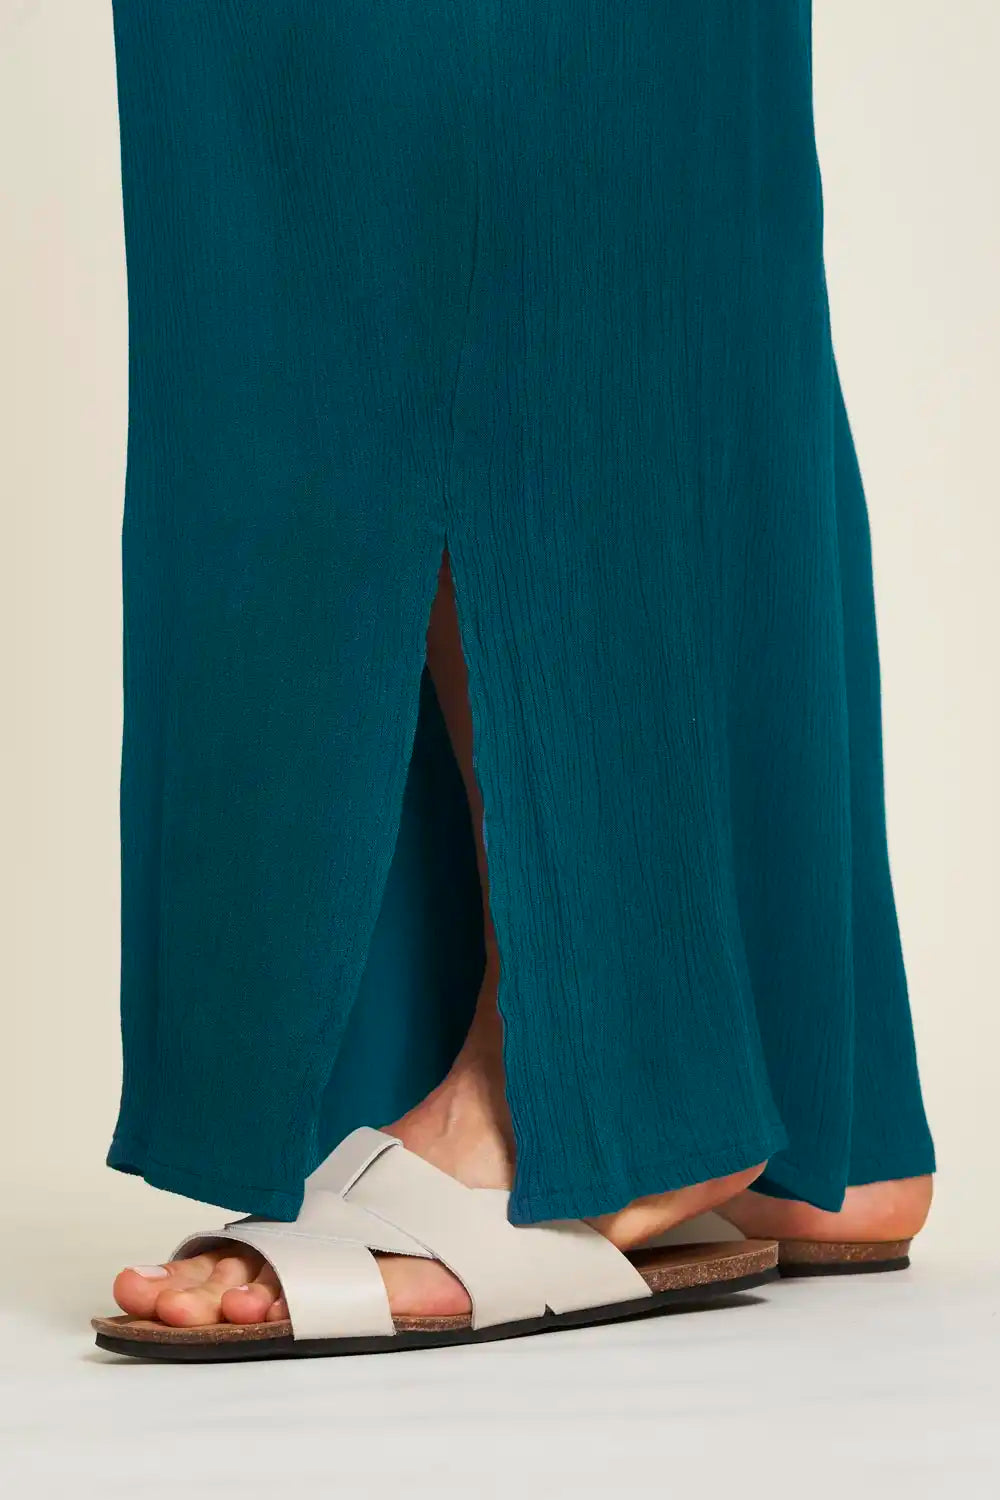 Tranquillo | Pantalone Donna in Viscosa EcoVero | Abbigliamento bio